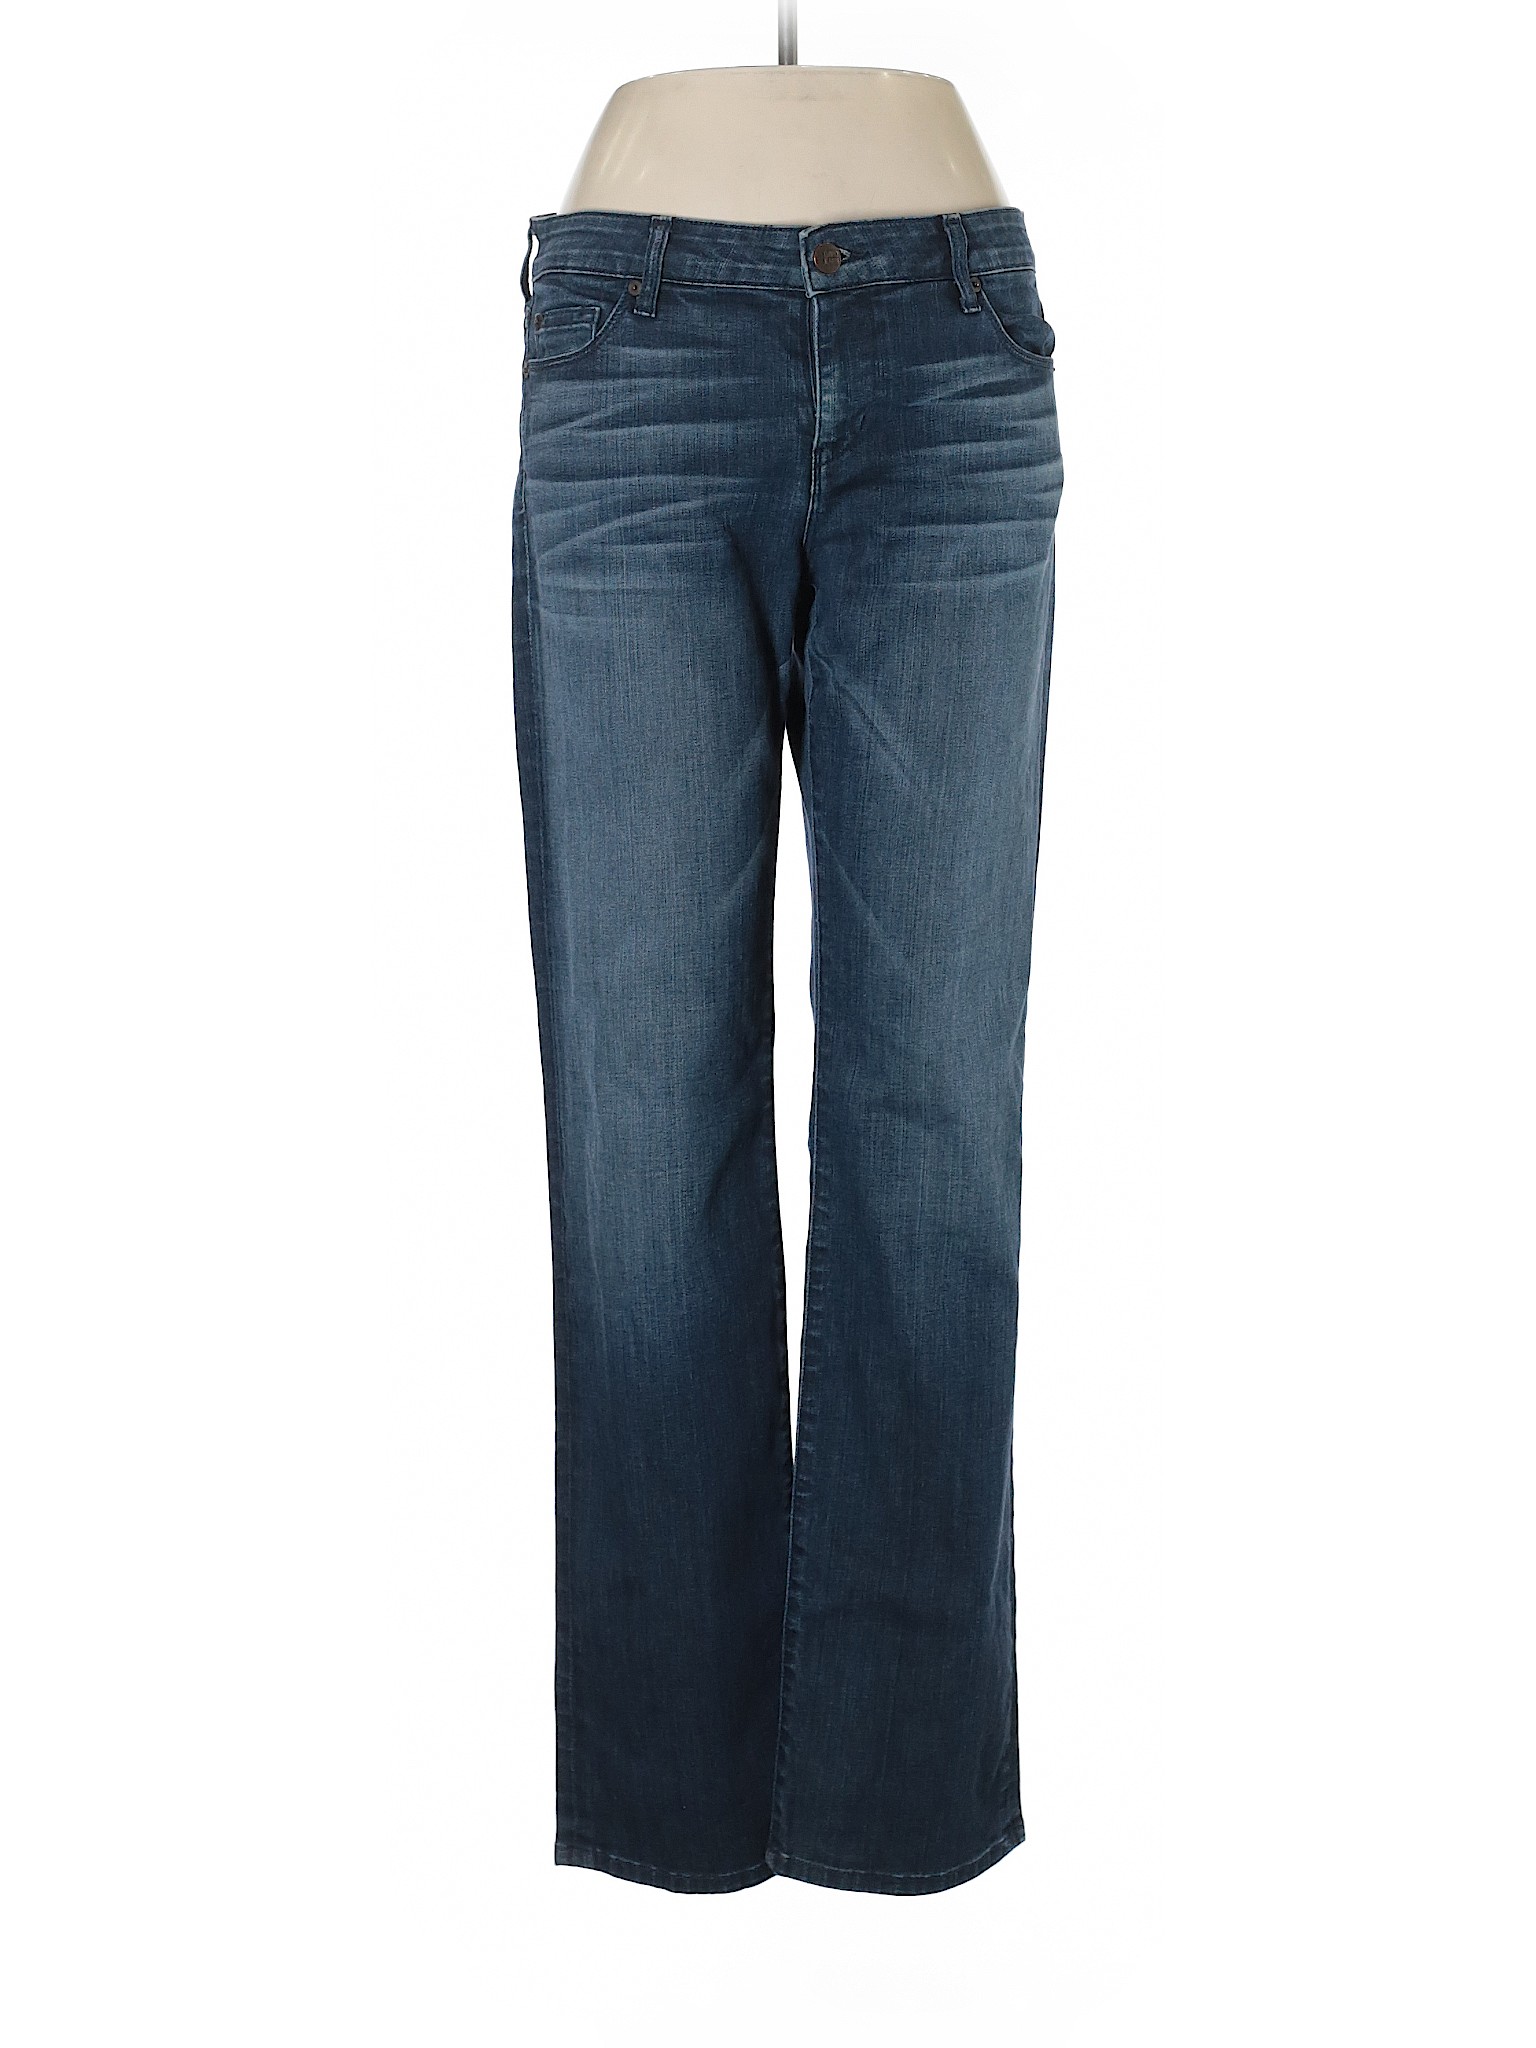 David Kahn Women Blue Jeans 29W | eBay